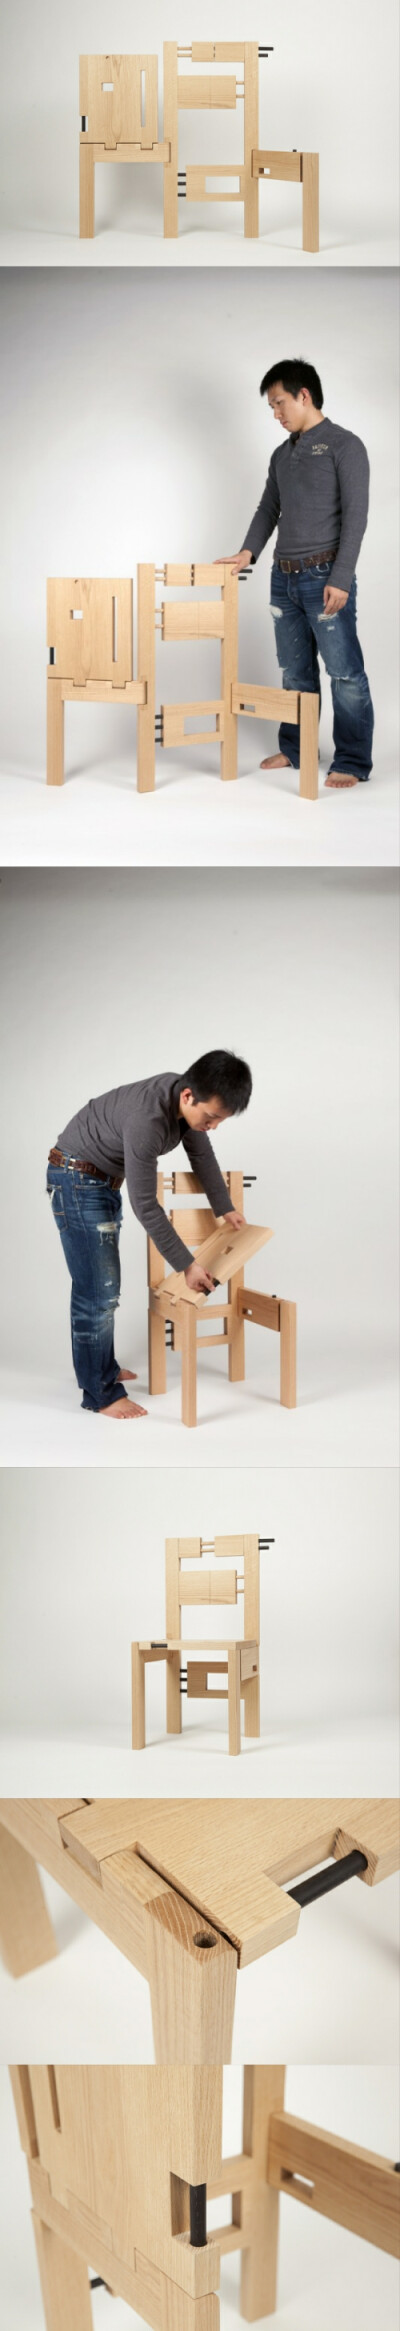 Kachi Katah是一把造型独特的折叠椅，灵感源于日本传统的插花艺术，在插花过程中，花艺设计师和观赏者共同获得一种缺憾、短暂和残缺的体验。 这把折叠椅采用扁平化设计，通过简单折叠，使用者就可以组装出一把可坐的…